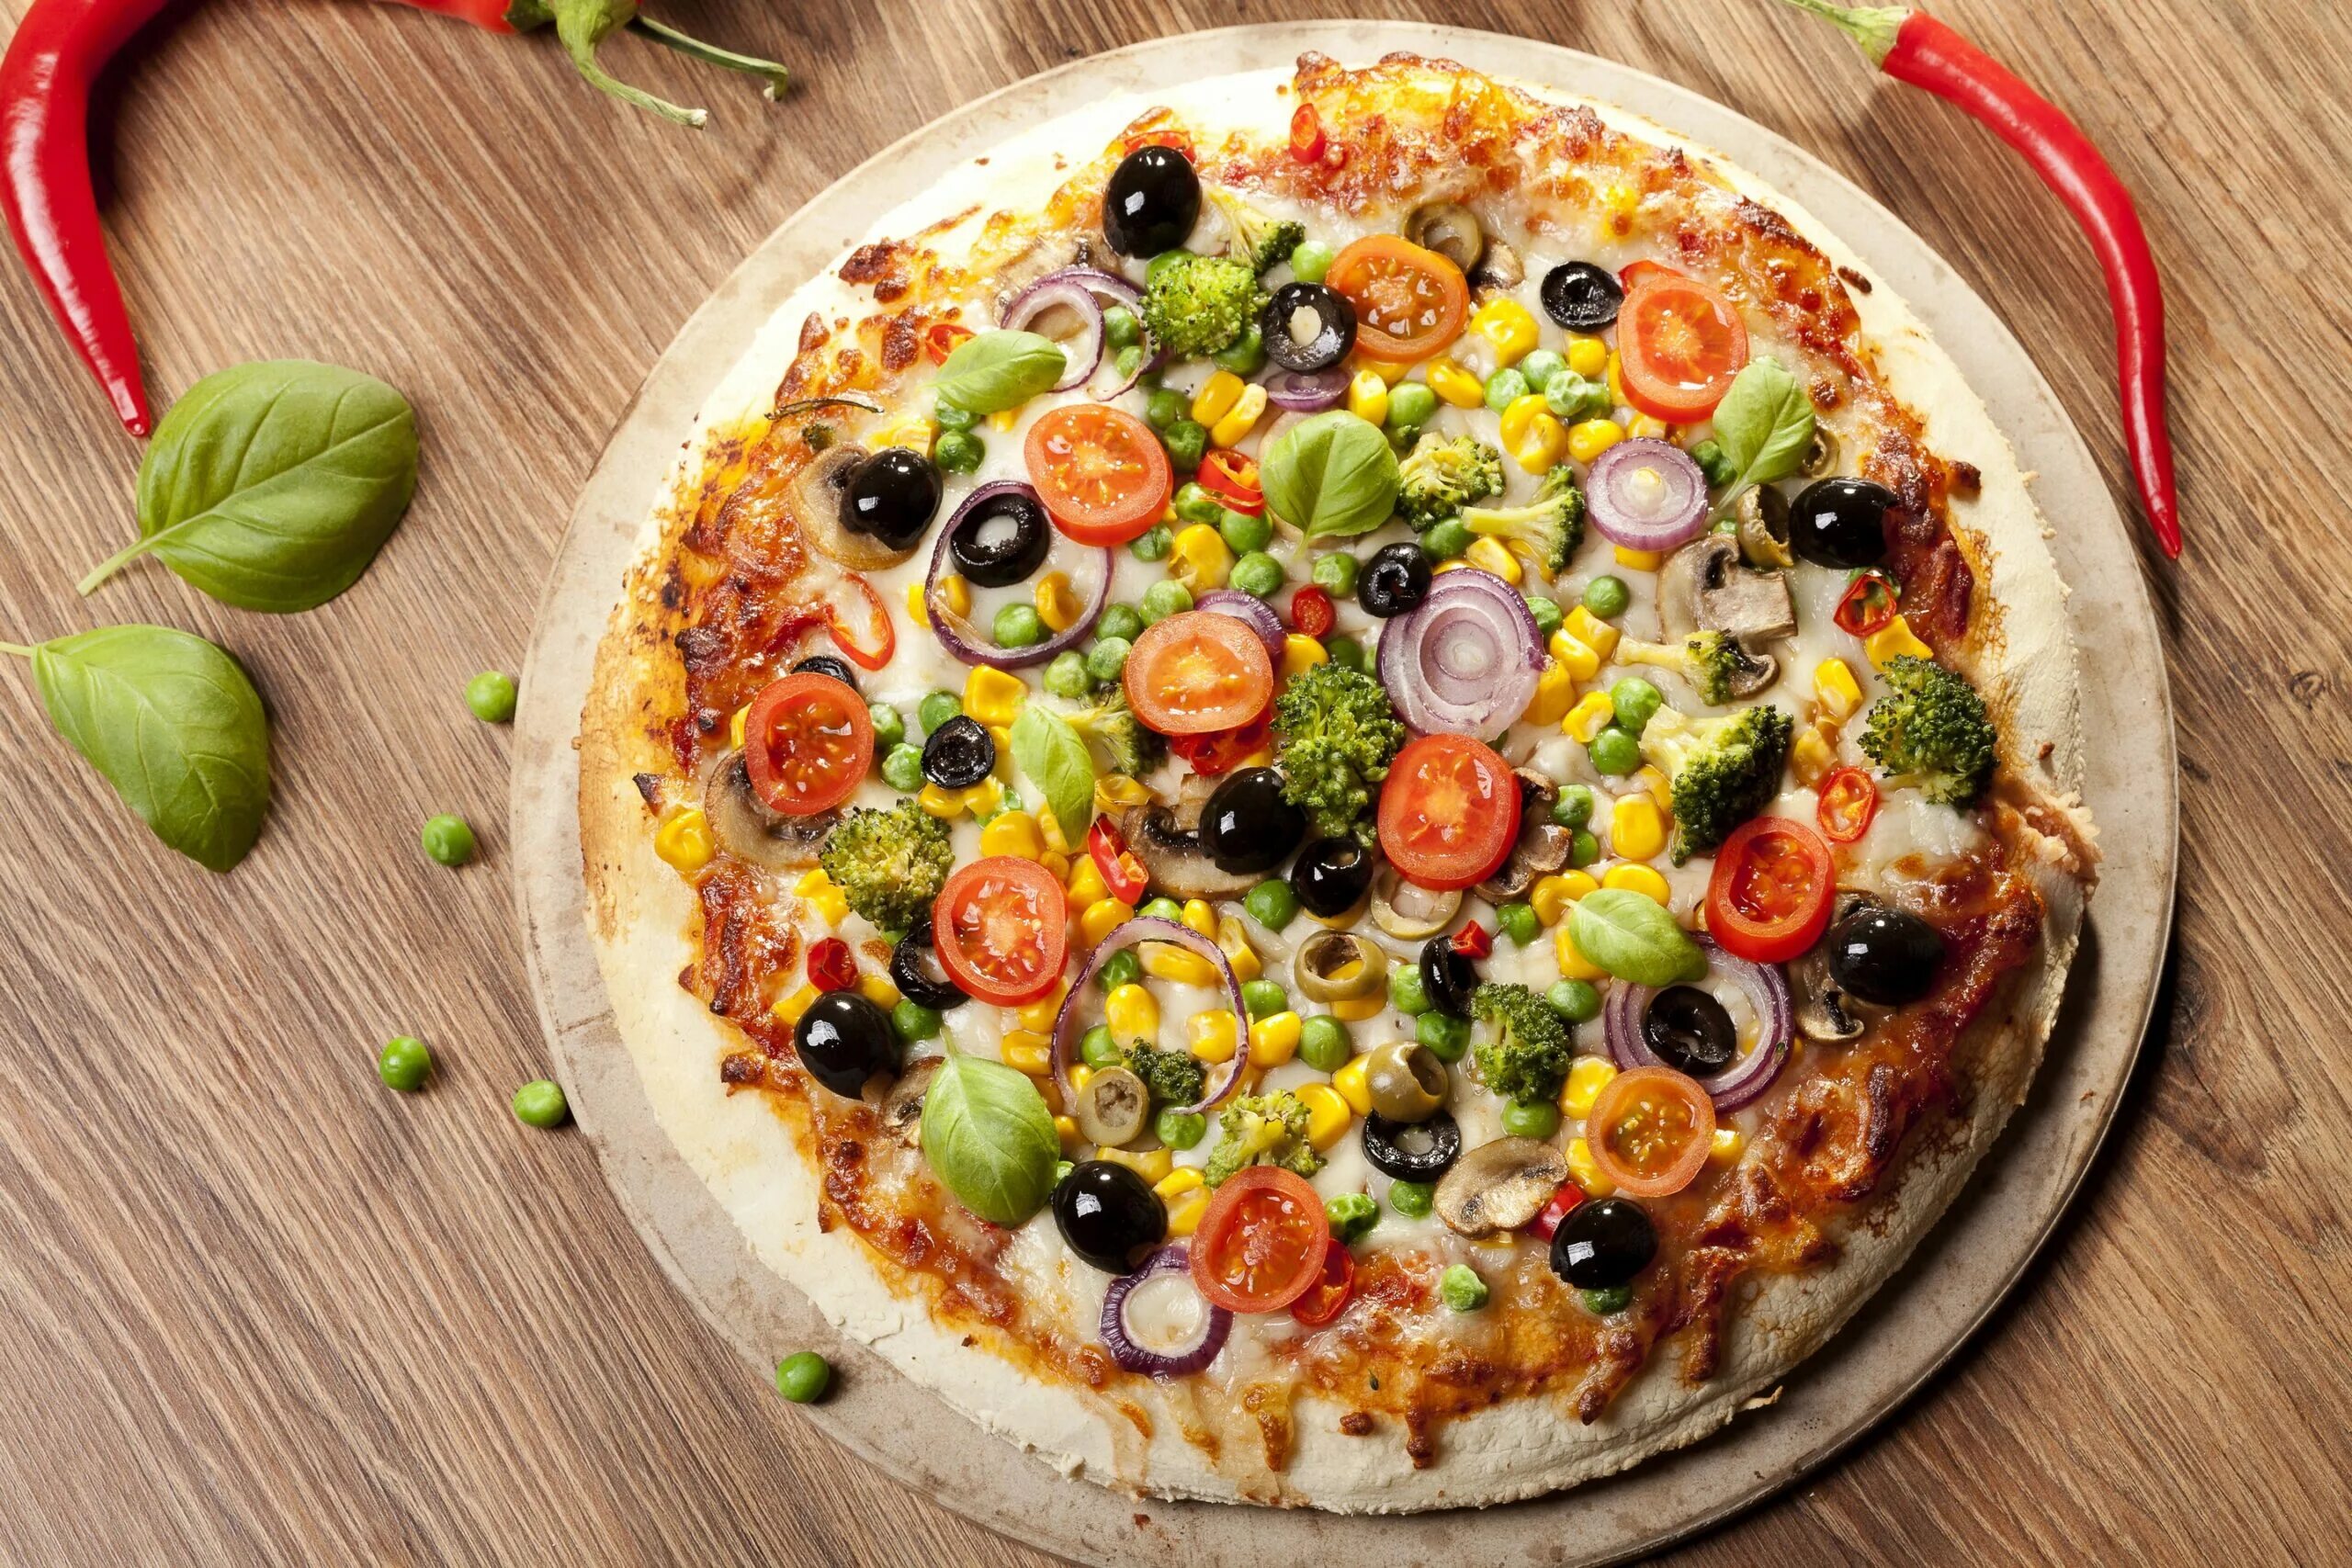 Така пицца. "Пицца". Красивая пицца. Итальянская пицца. Пицца овощная.